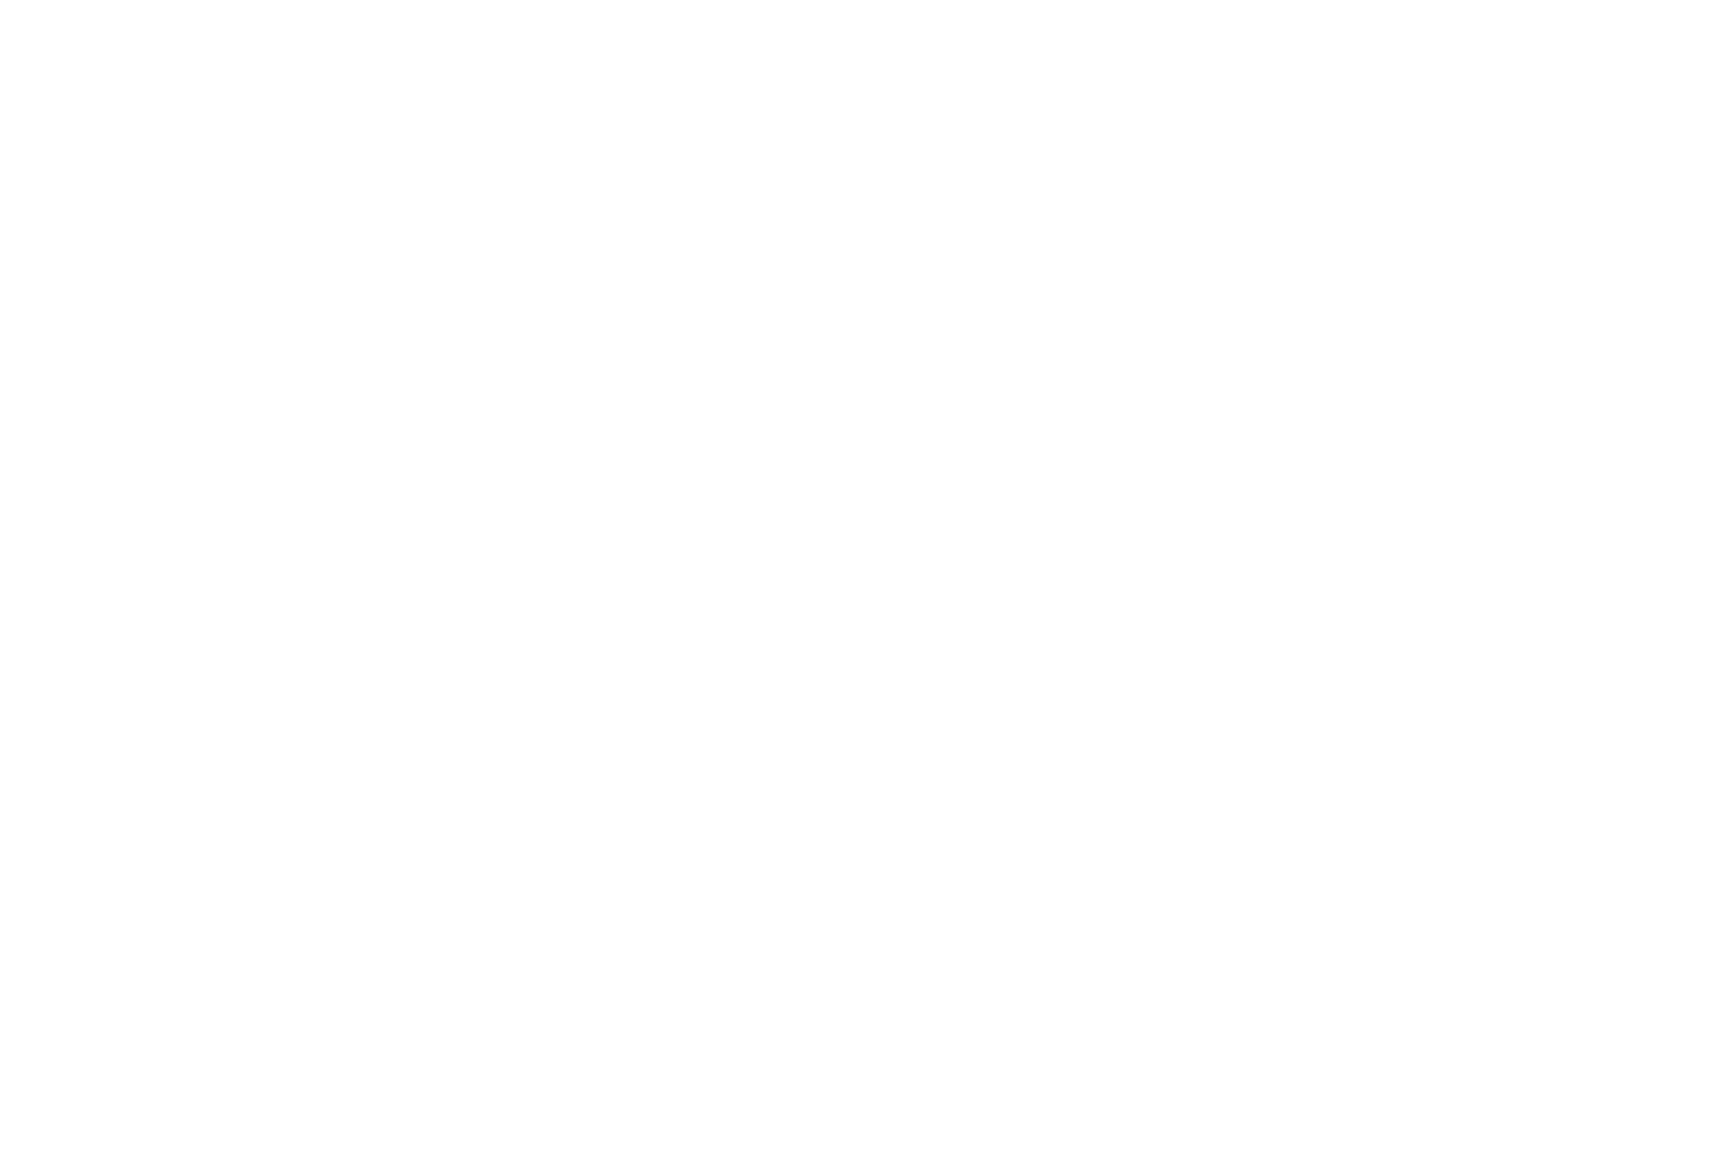 Winner - Best Young Actress - European Cinematography AWARDS ECA - 2023